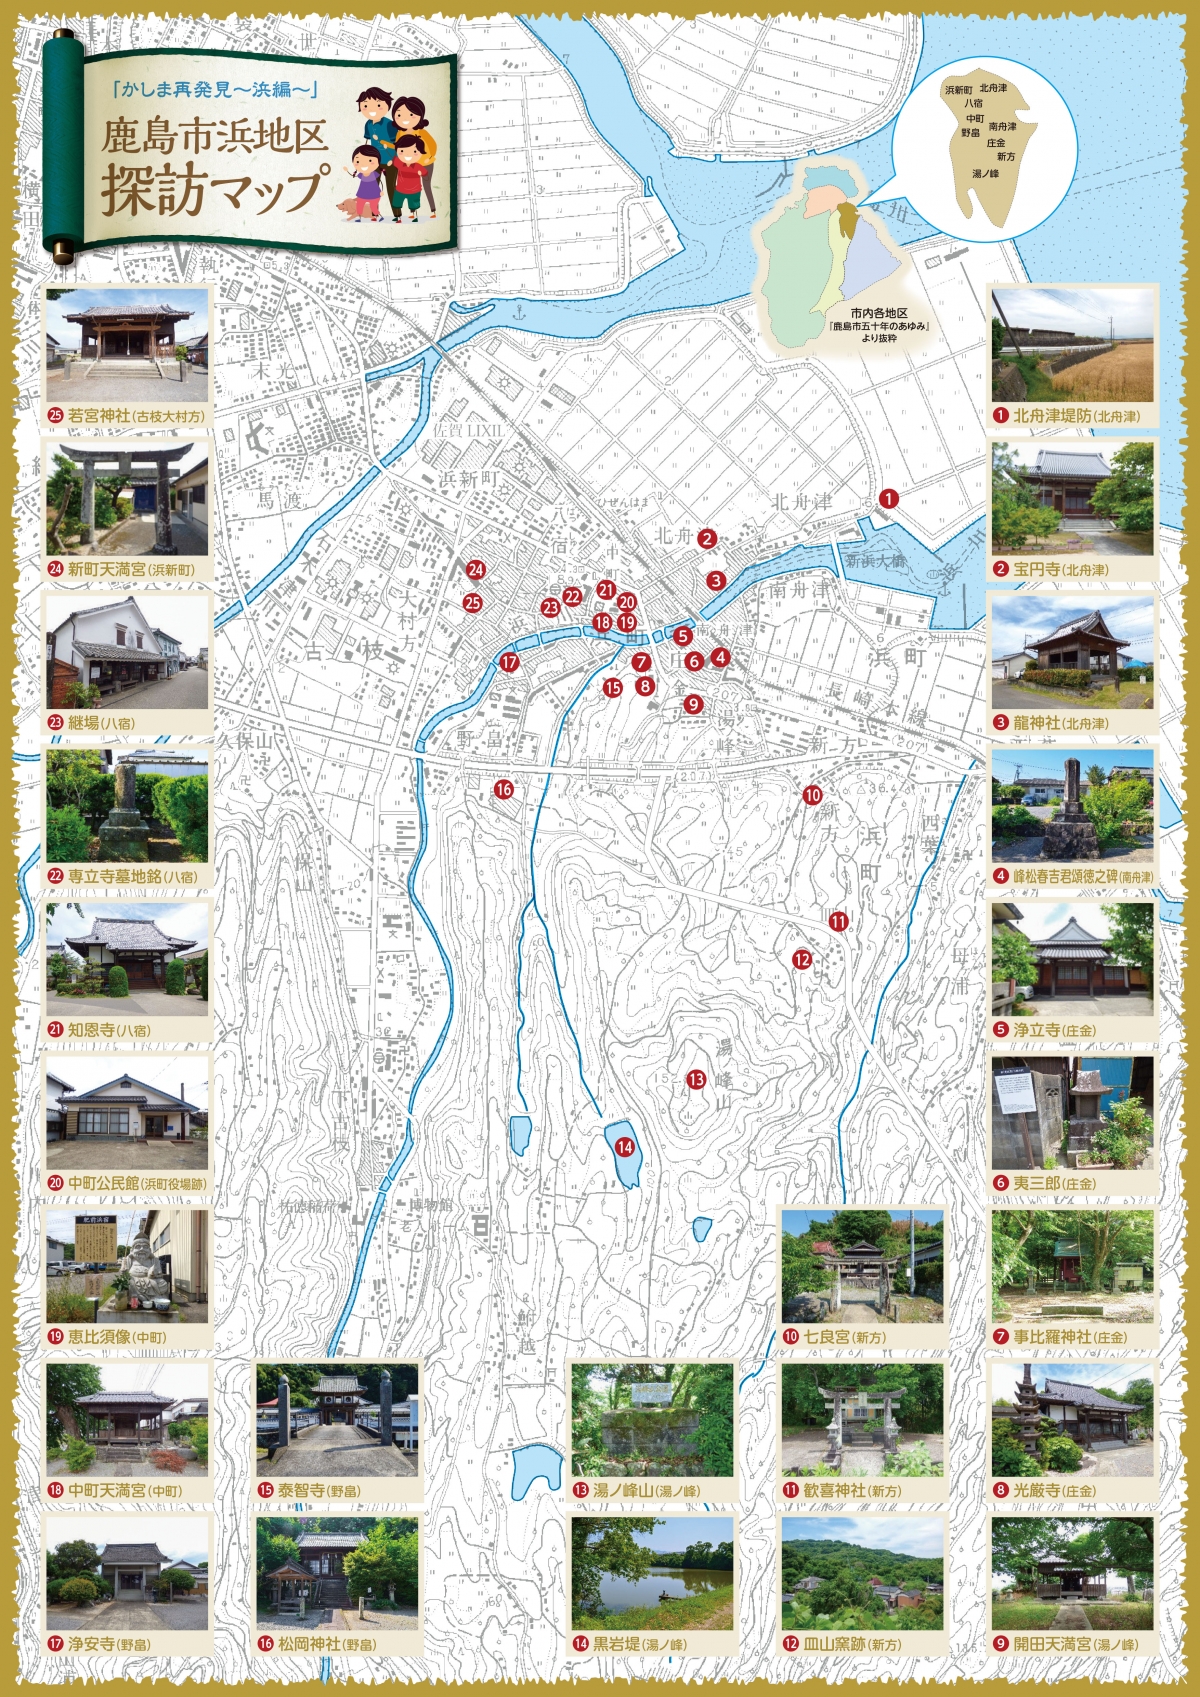 鹿島市浜地区 探訪マップ 表